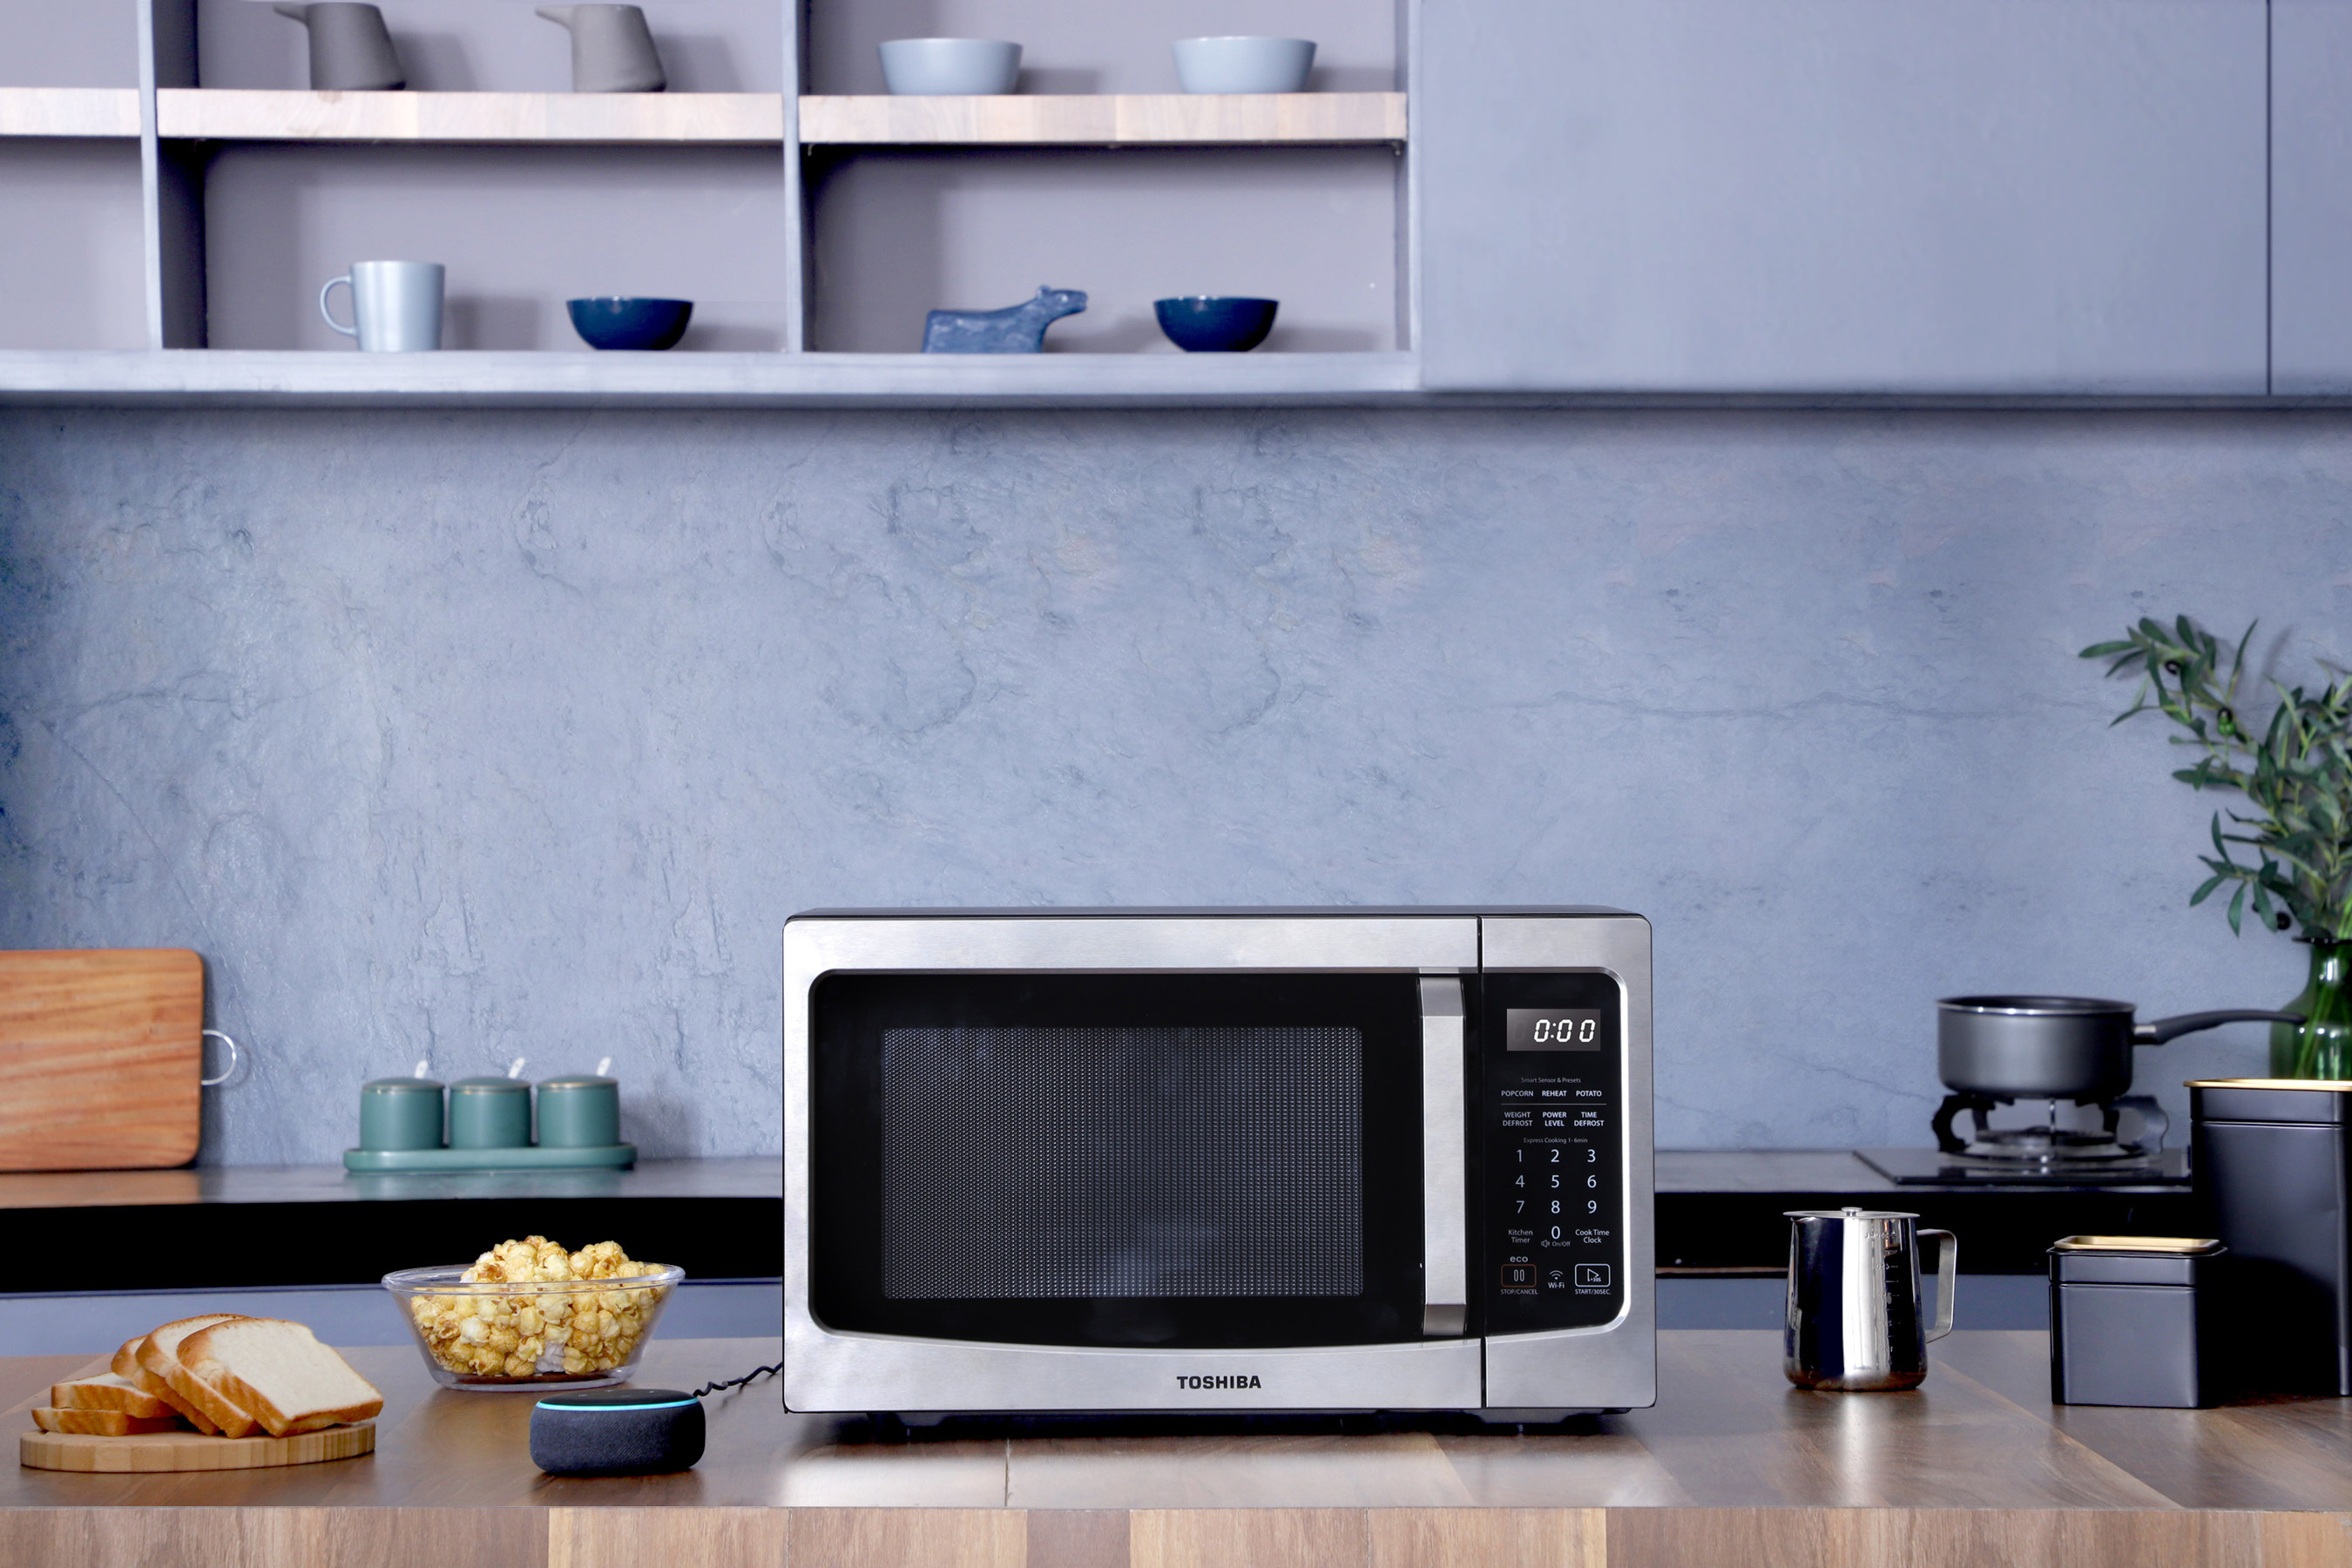 Рядом с микроволновкой. Микроволновая печь Microwave Oven. Микроволновка Тошиба. Samsung Microwave Oven с вытяжкой. Микроволновая печь Barazza 1moa.